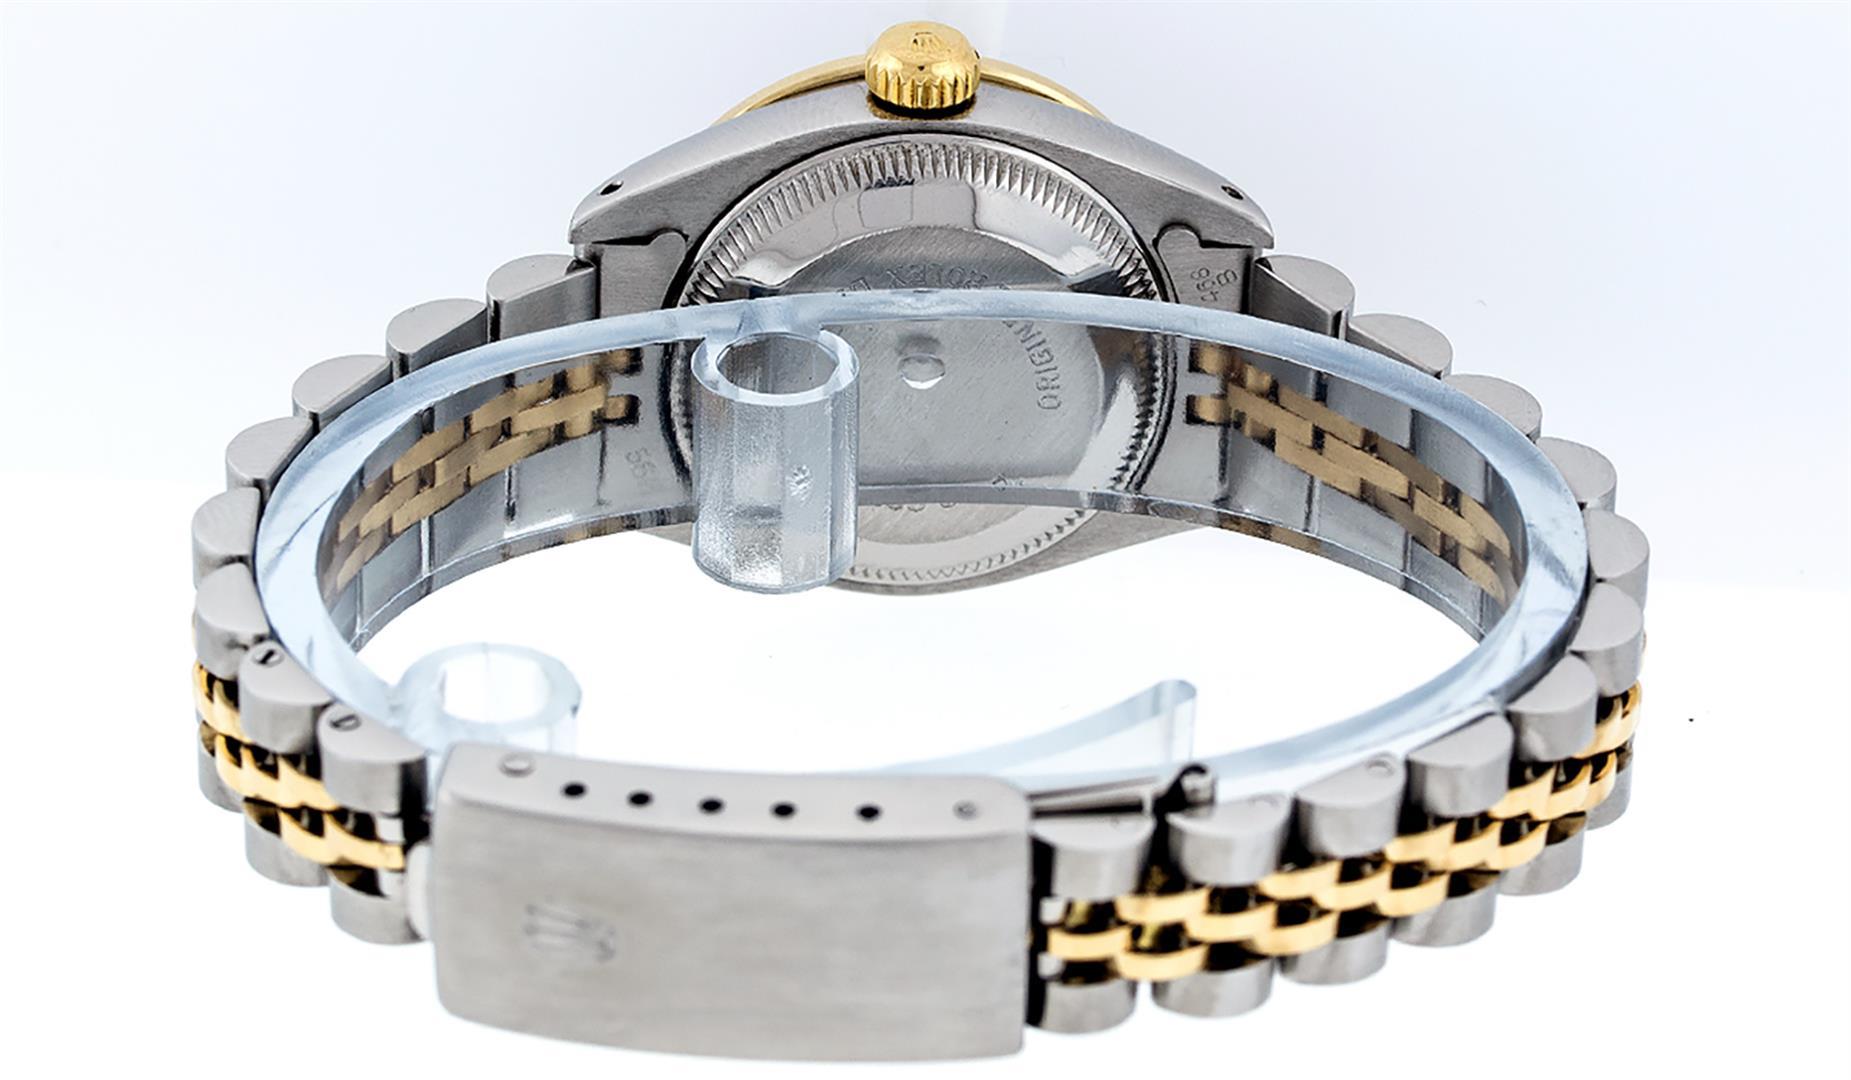 Rolex Ladies 2 Tone Silver Diamond & Ruby Datejust Wristwatch